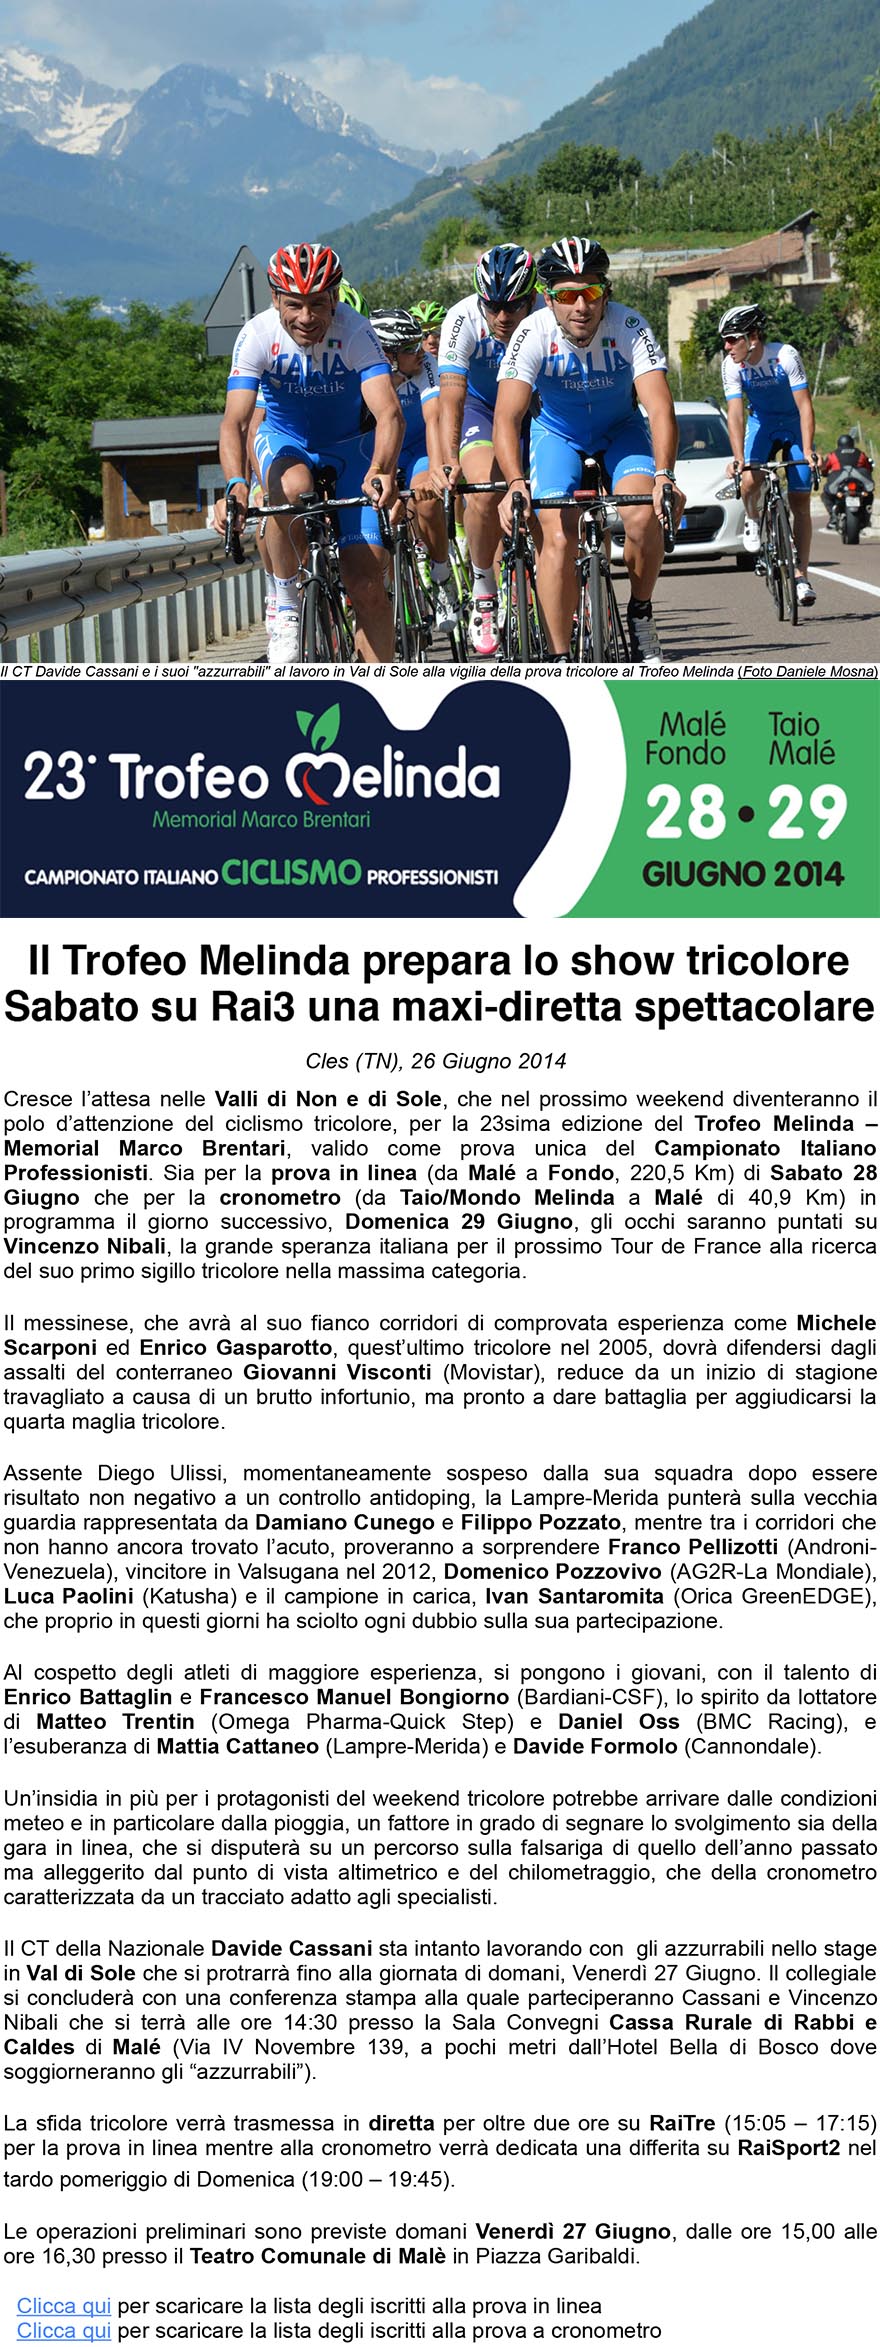 23 Trofeo MelindaMemorial Marco Brentari  Campionato Italiano Professionisti  Comunicato Stampa 26 Giugno